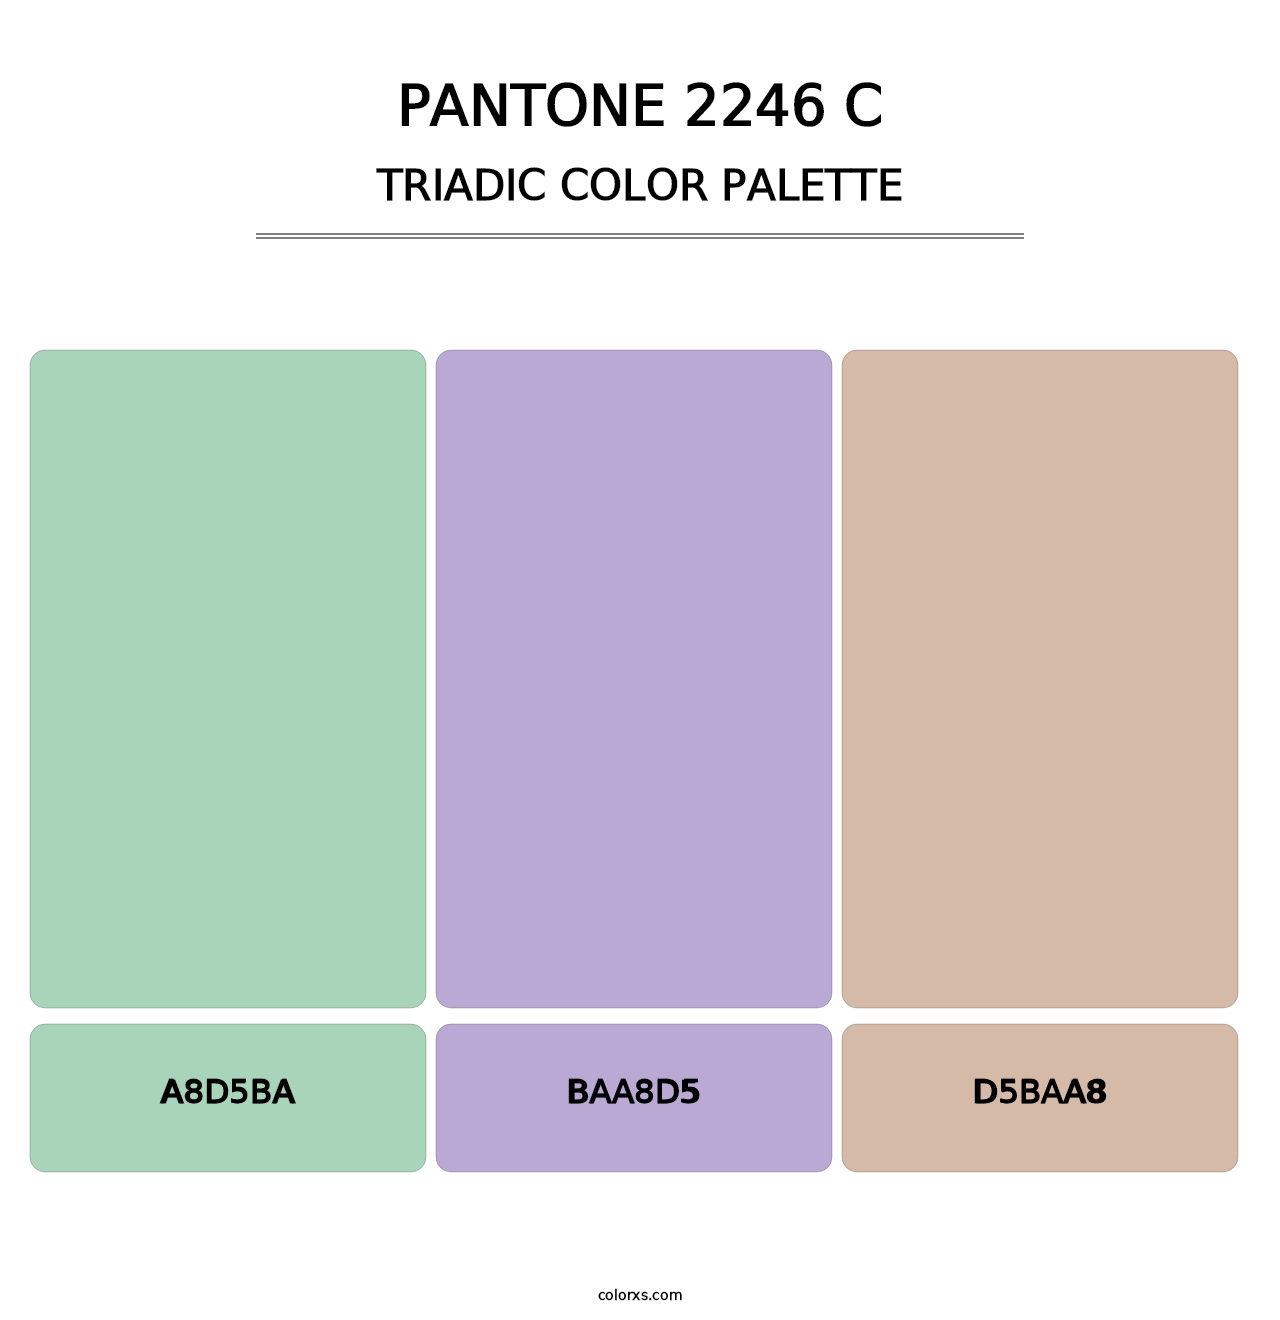 PANTONE 2246 C - Triadic Color Palette